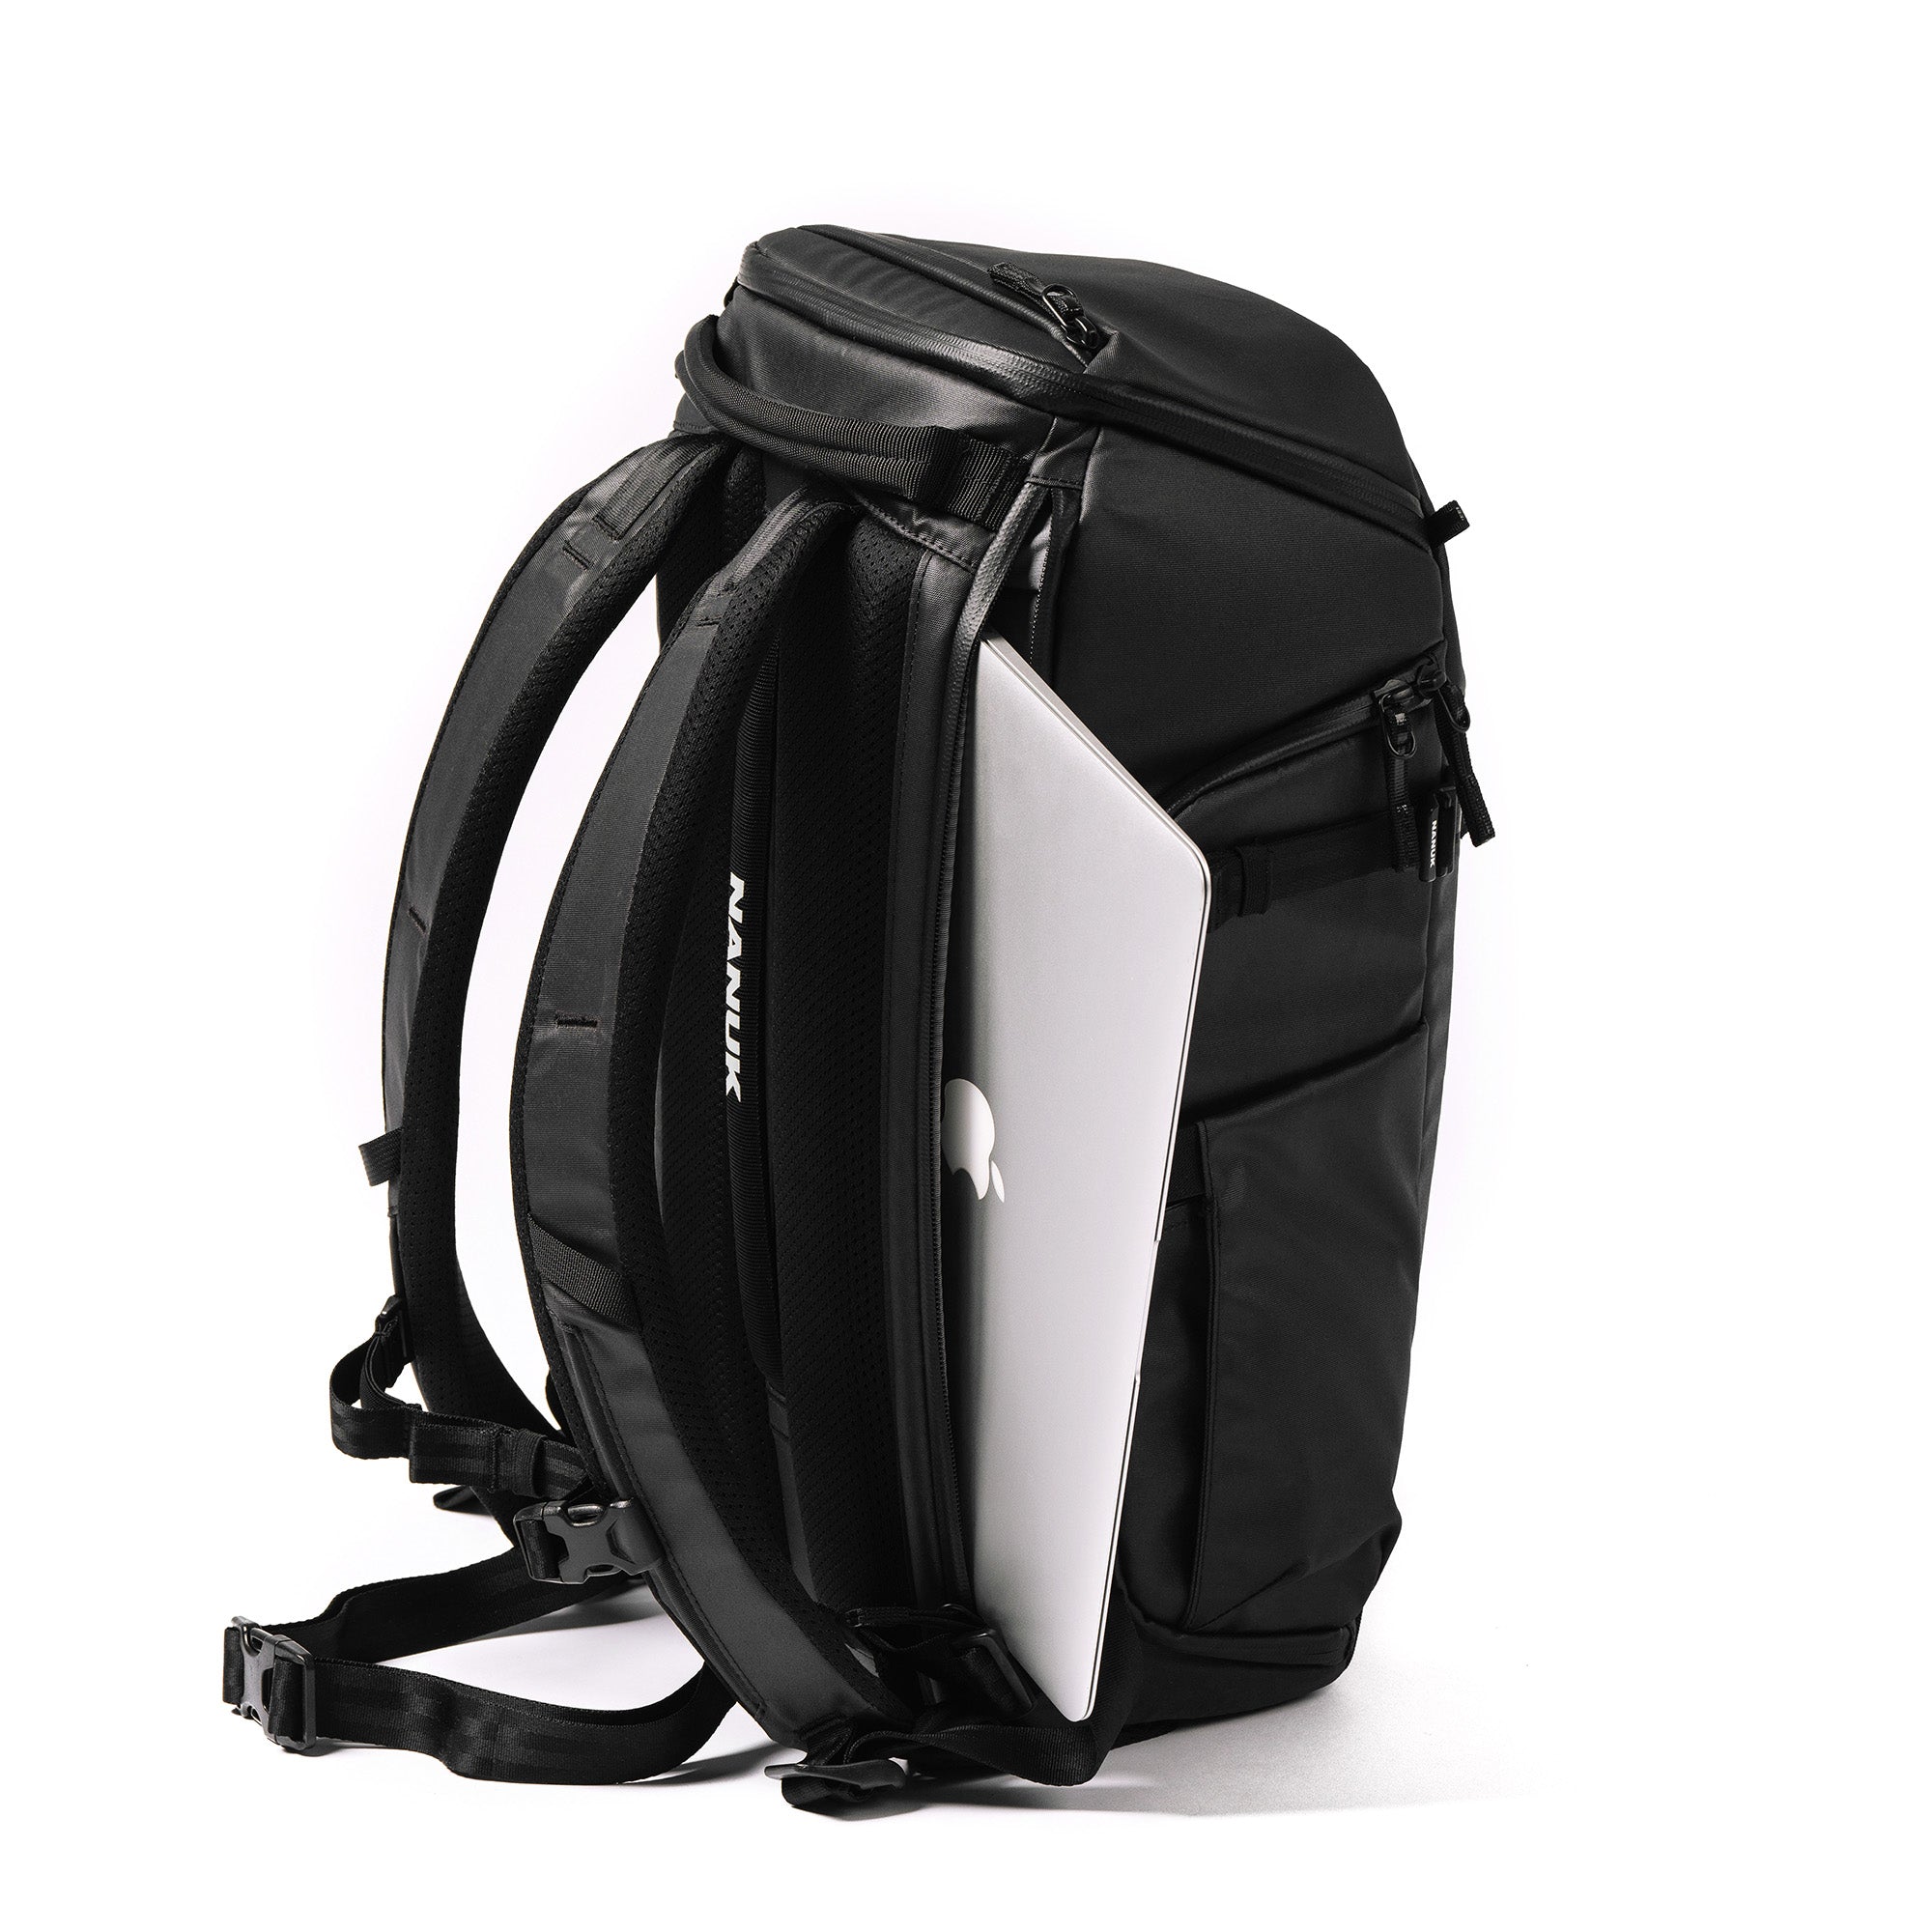 NANUK N-PVD 18L backpack